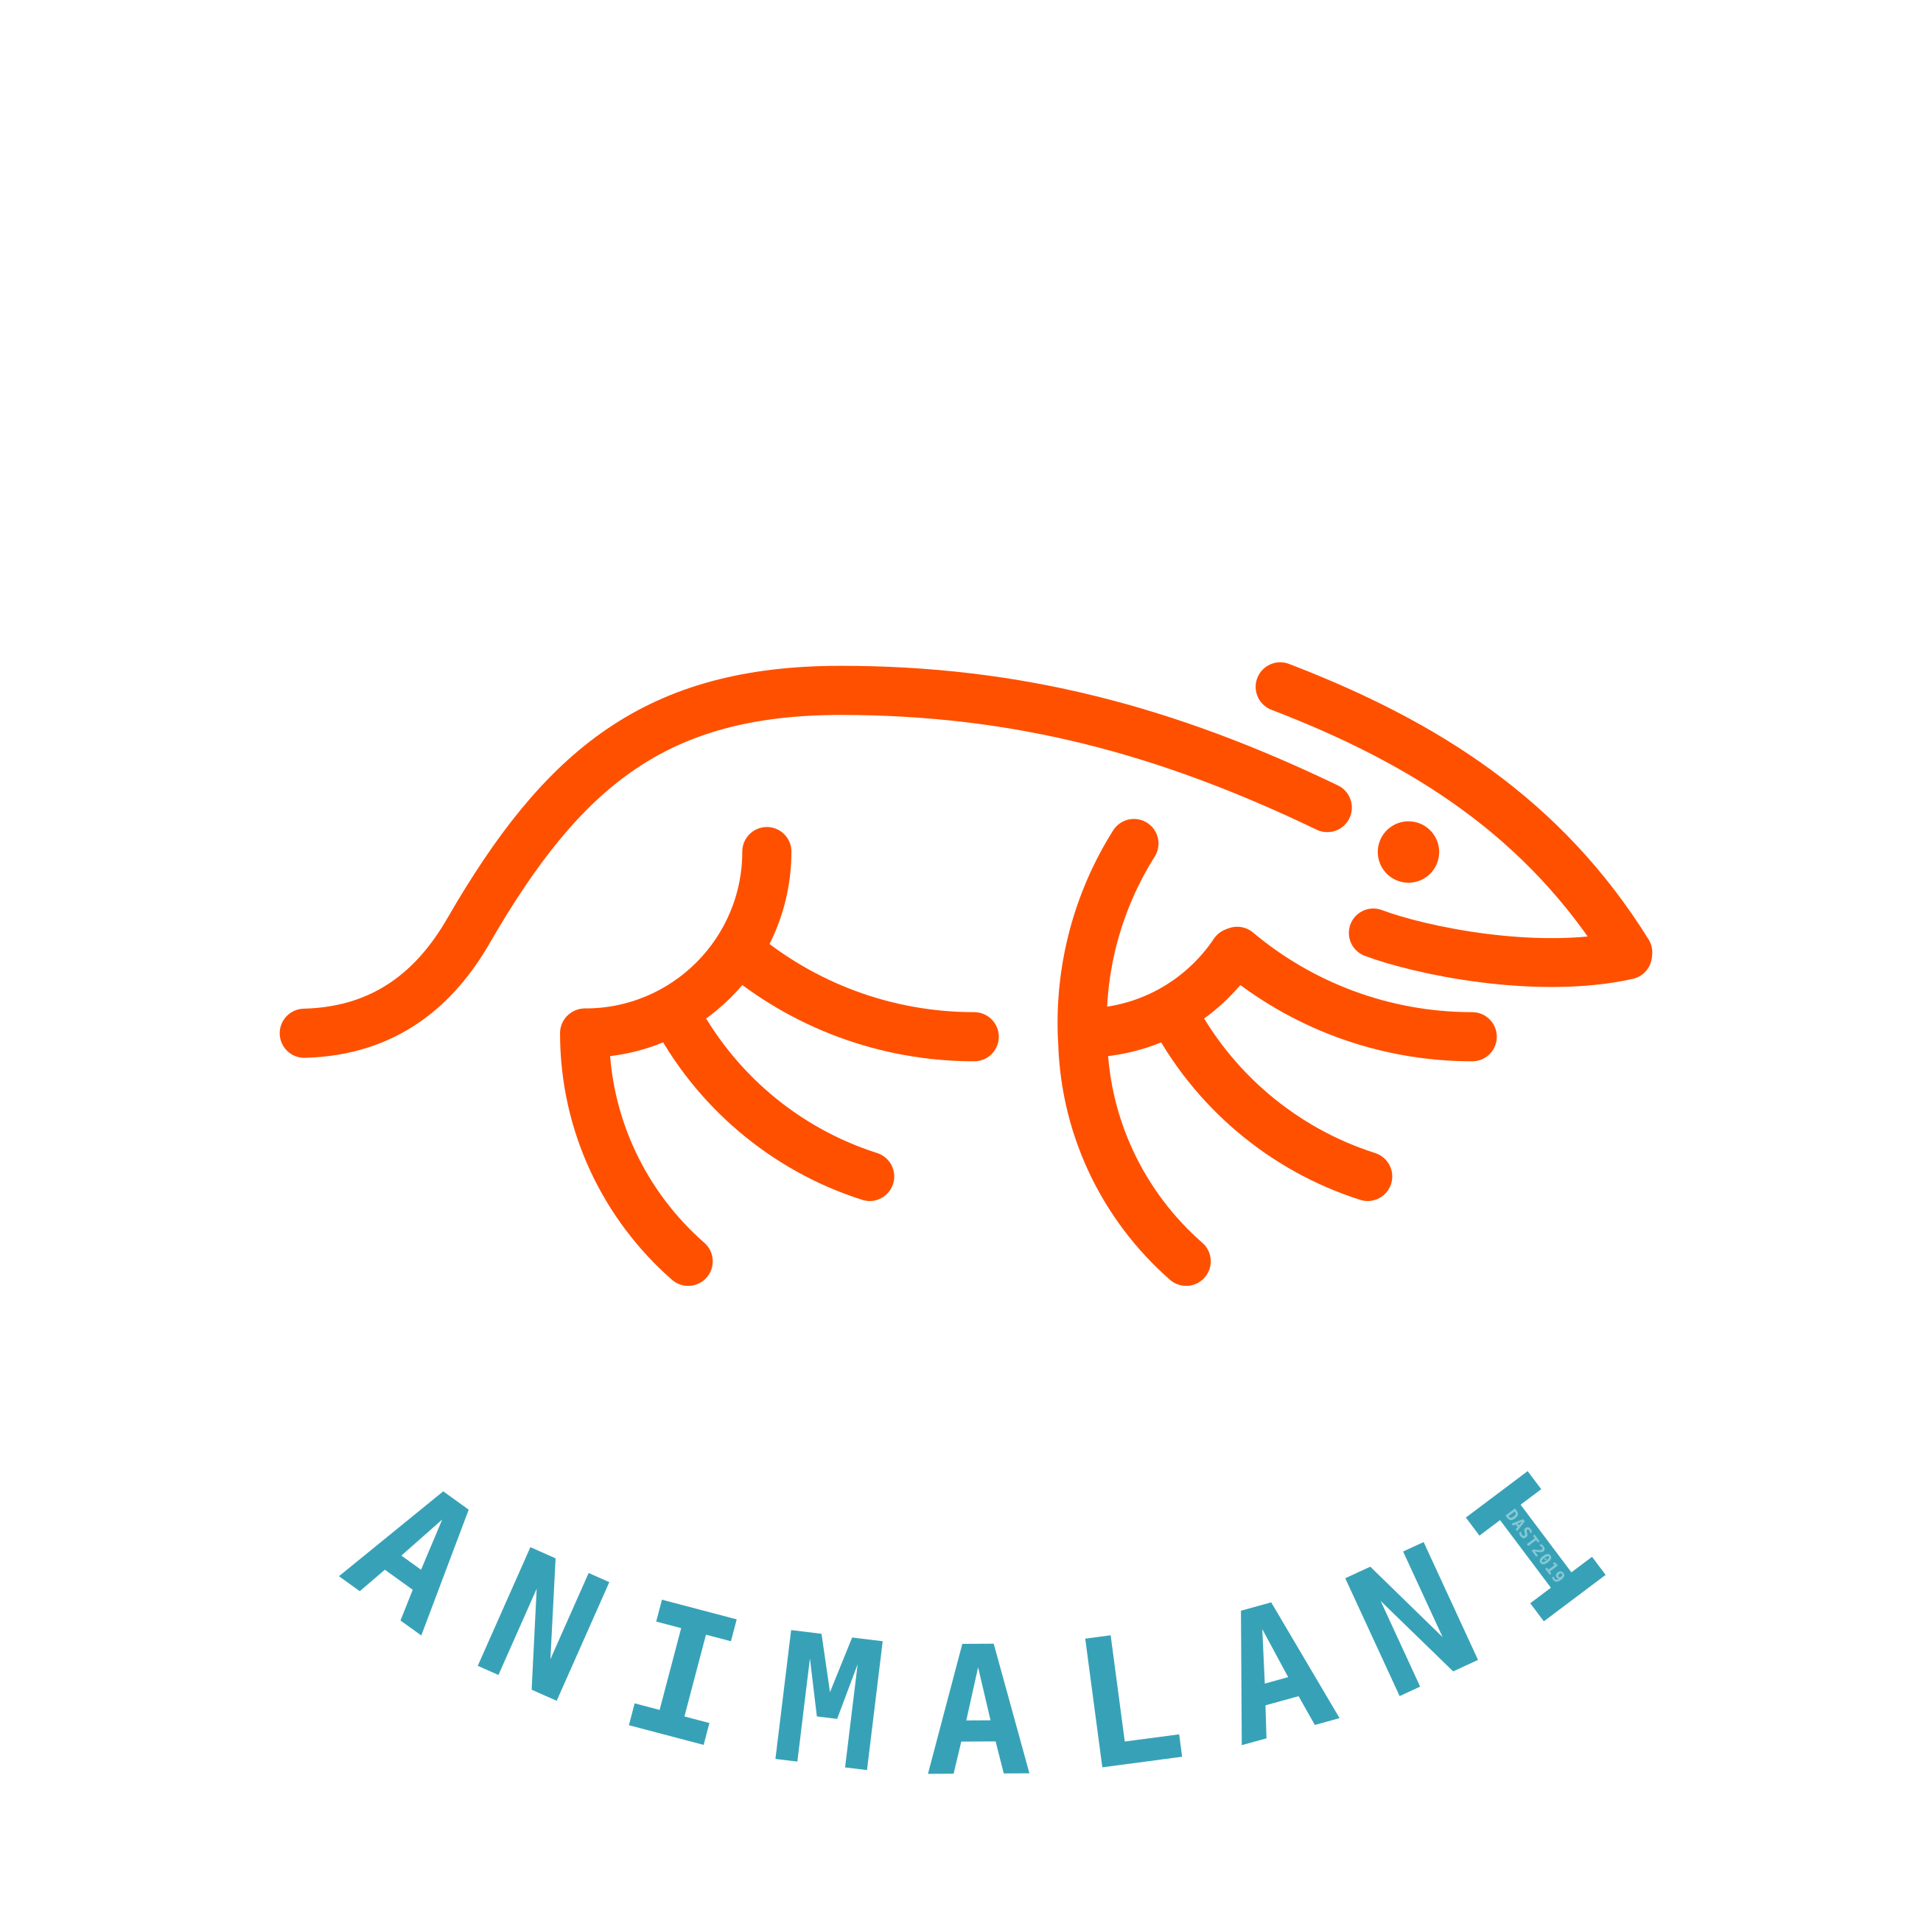 Animalani, Malanimal, DAST2019/02